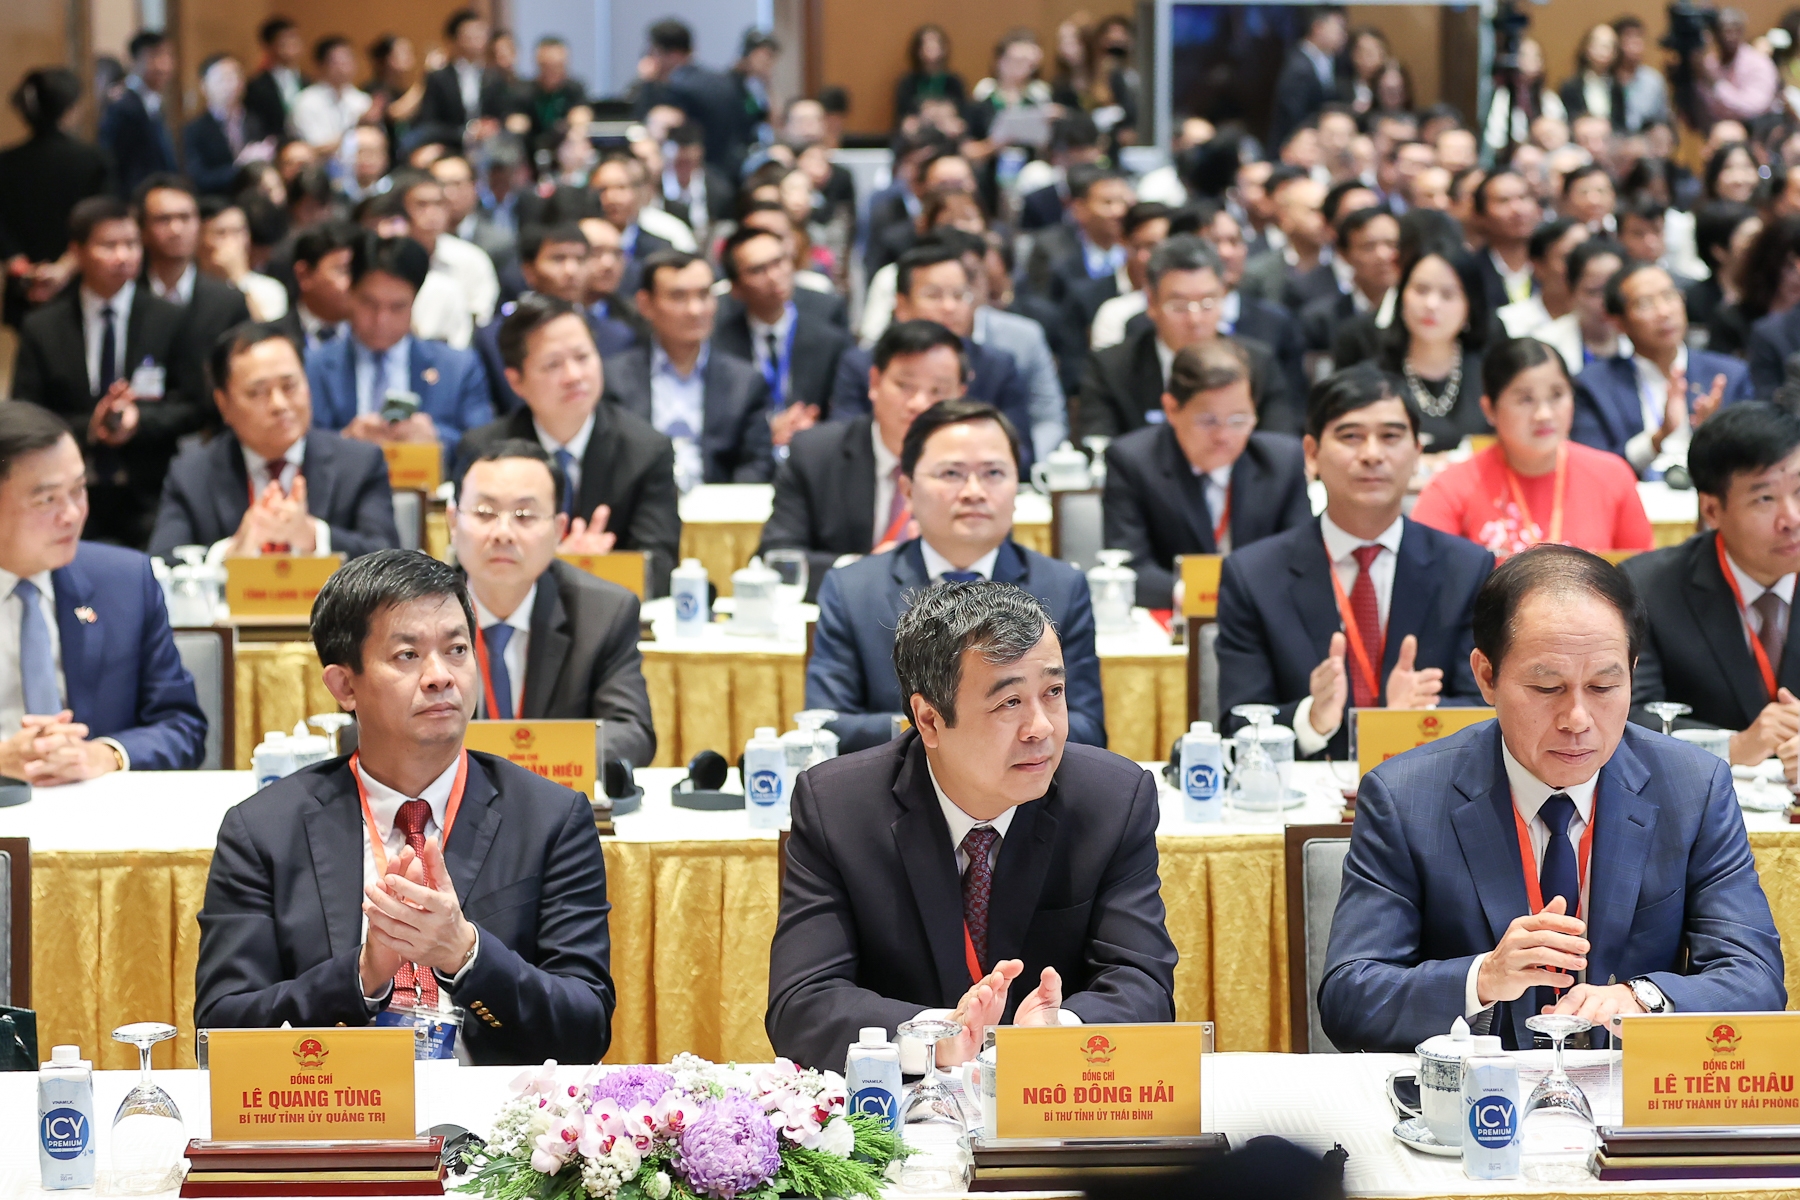 Hợp tác kinh tế - đầu tư - thương mại là trụ cột chiếm vị trí quan trọng nhất trong mối quan hệ đối tác chiến lược Việt Nam-Singapore